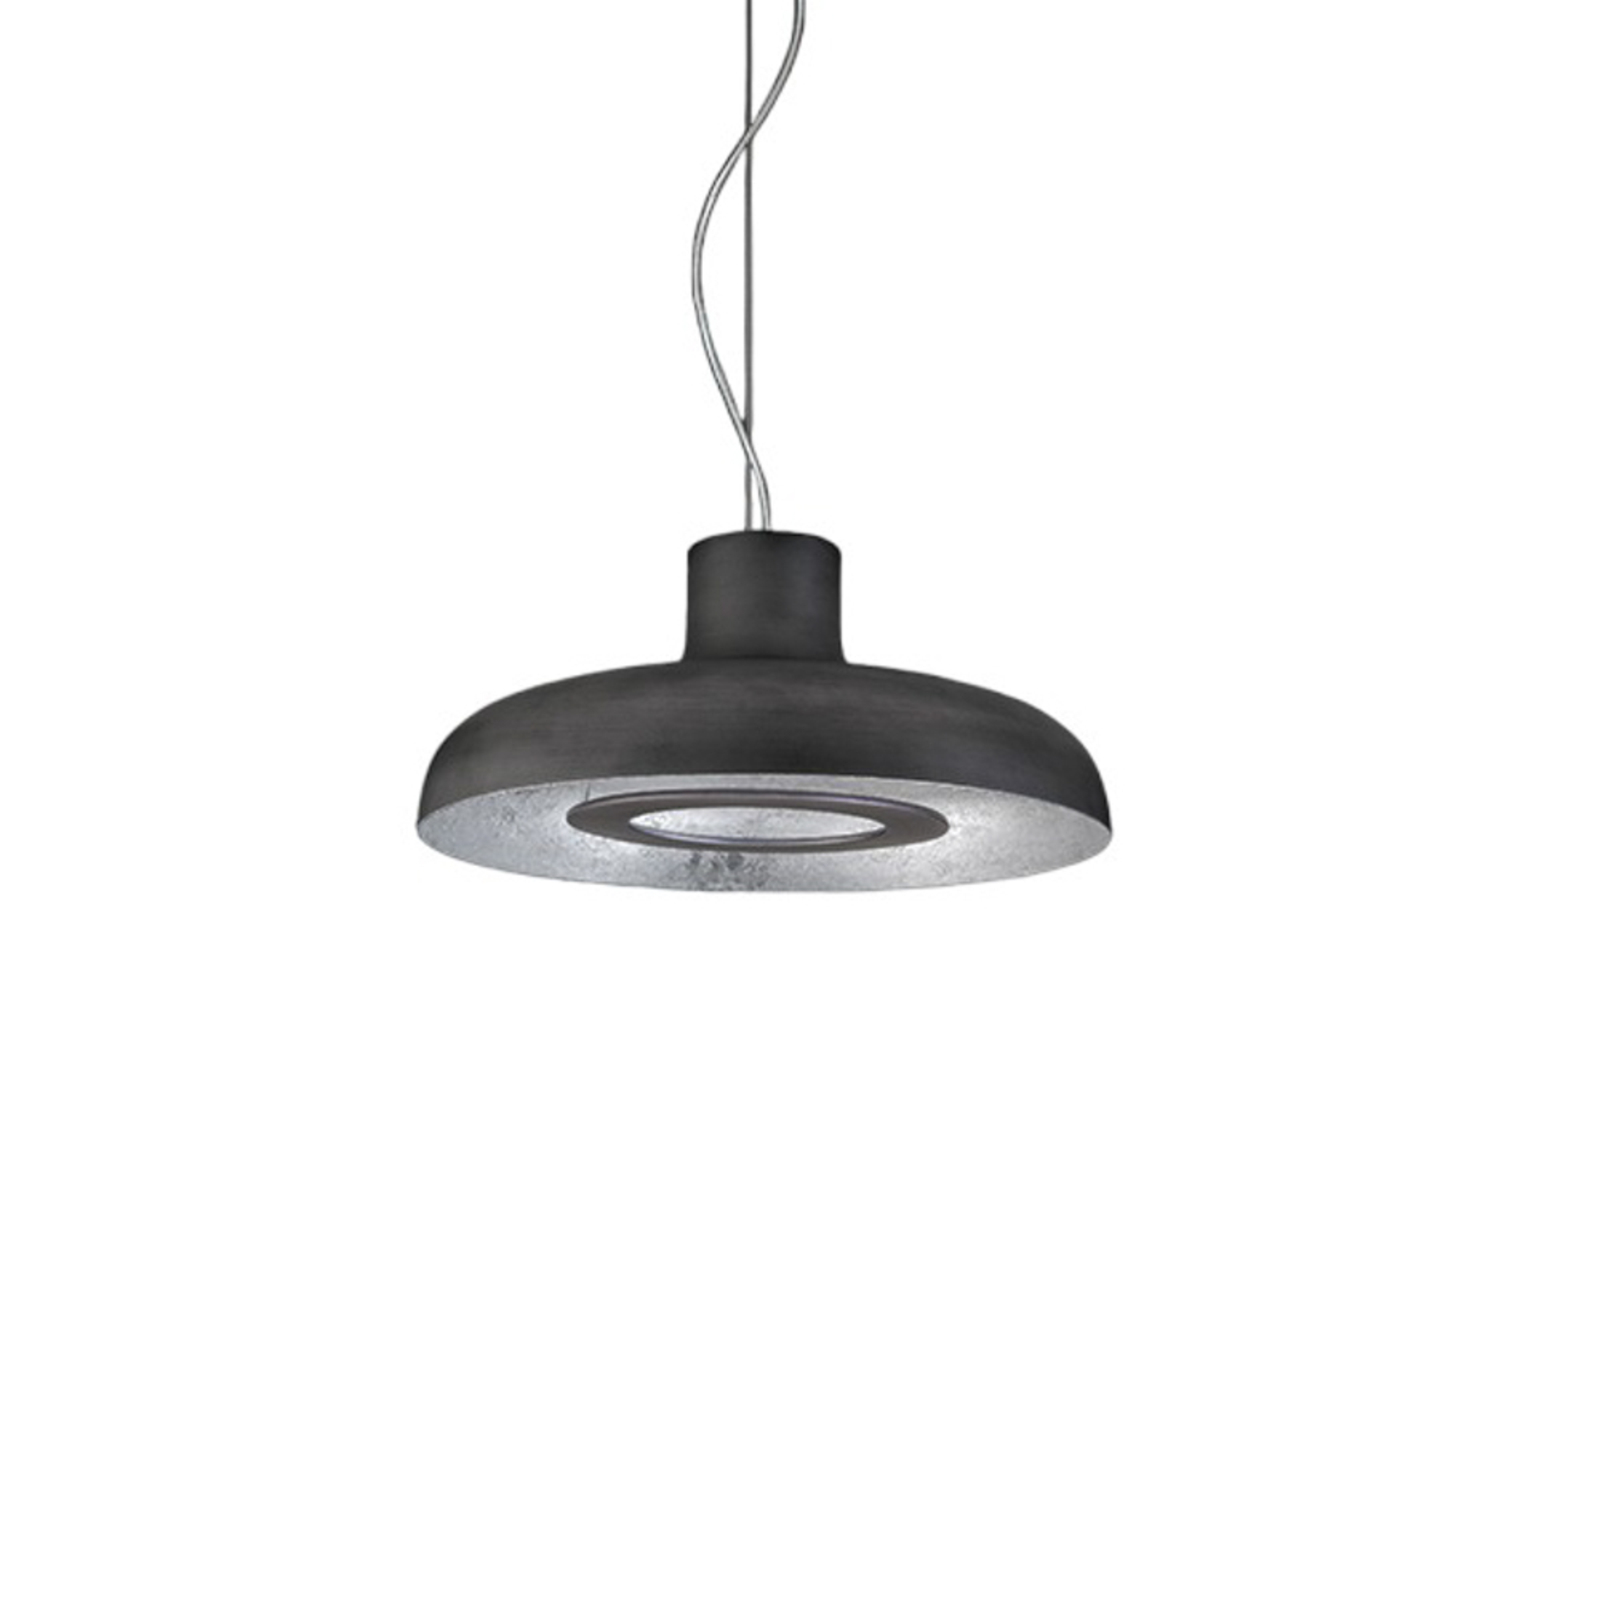 ICONE Duetto LED lampa wisząca 927 Ø55cm żelazo/srebrny